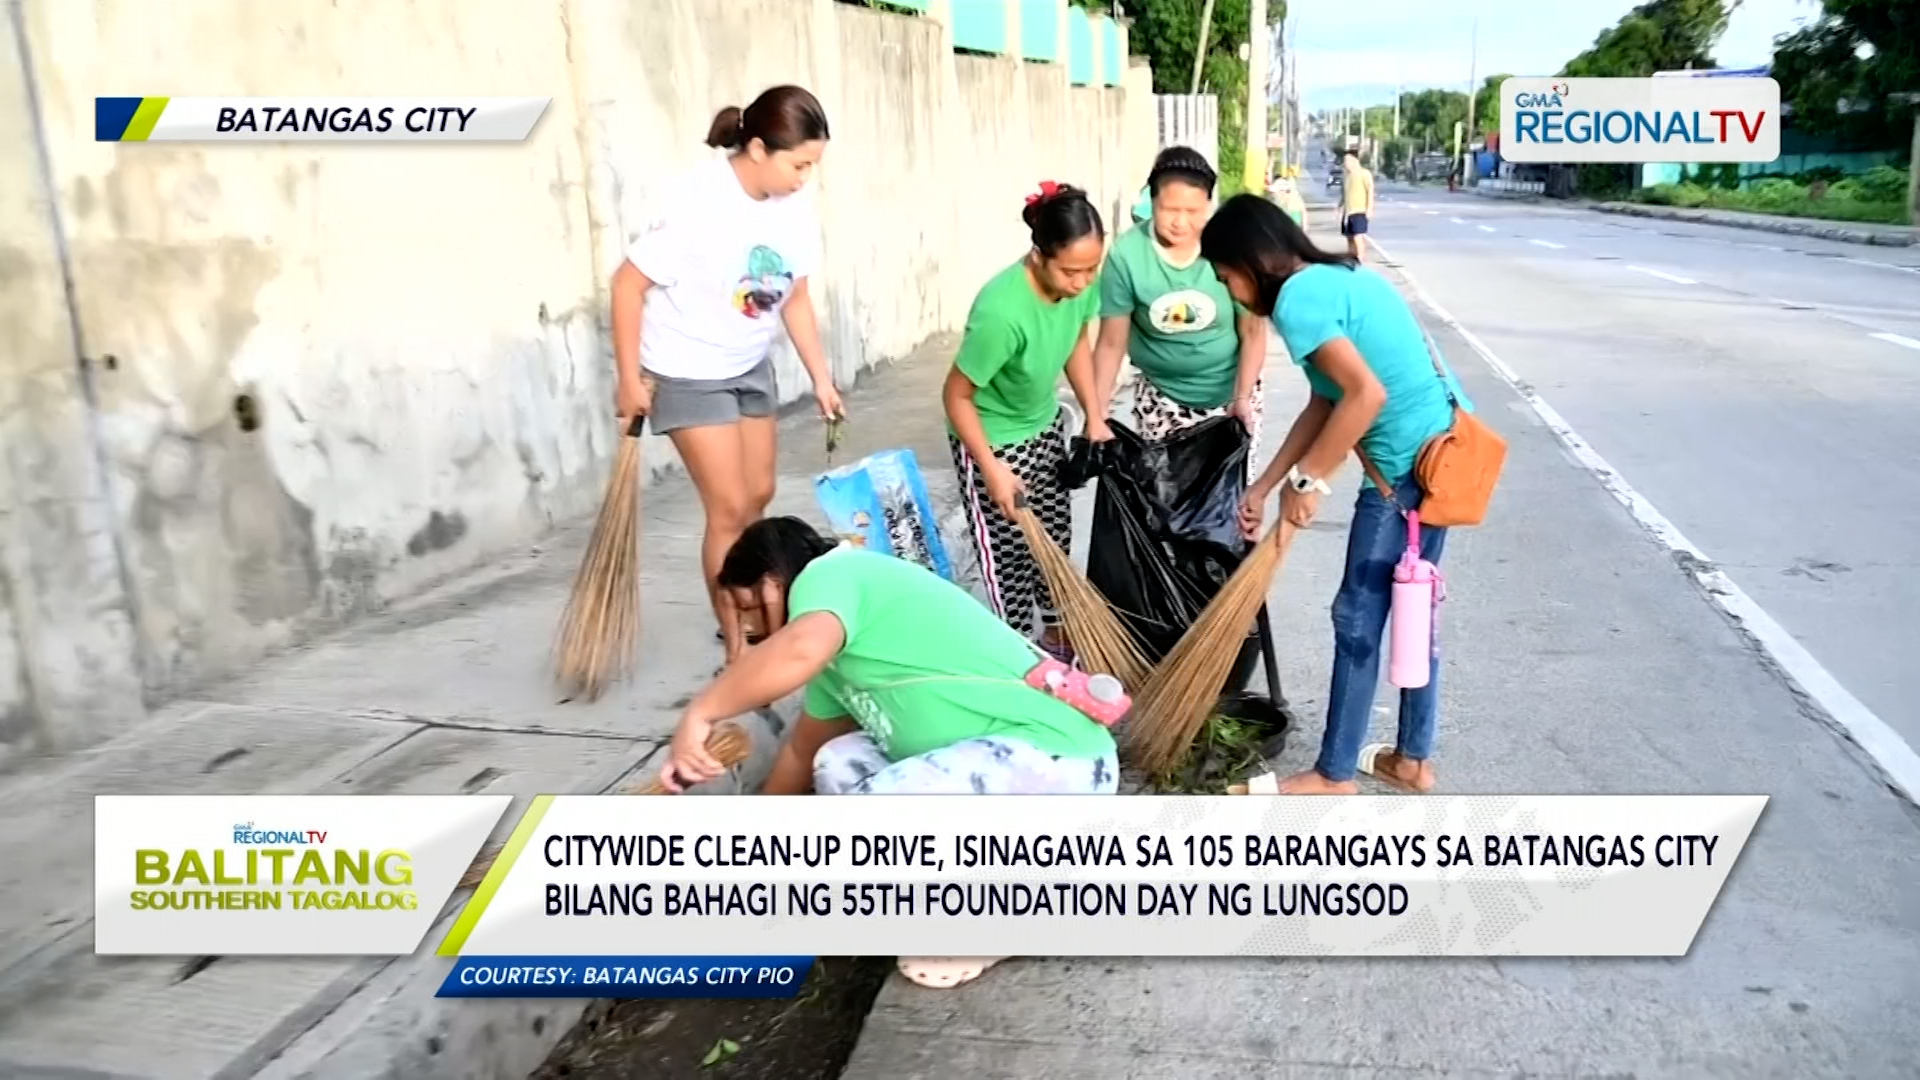 Citywide clean-up drive, isinagawa sa 105 barangays sa Batangas City